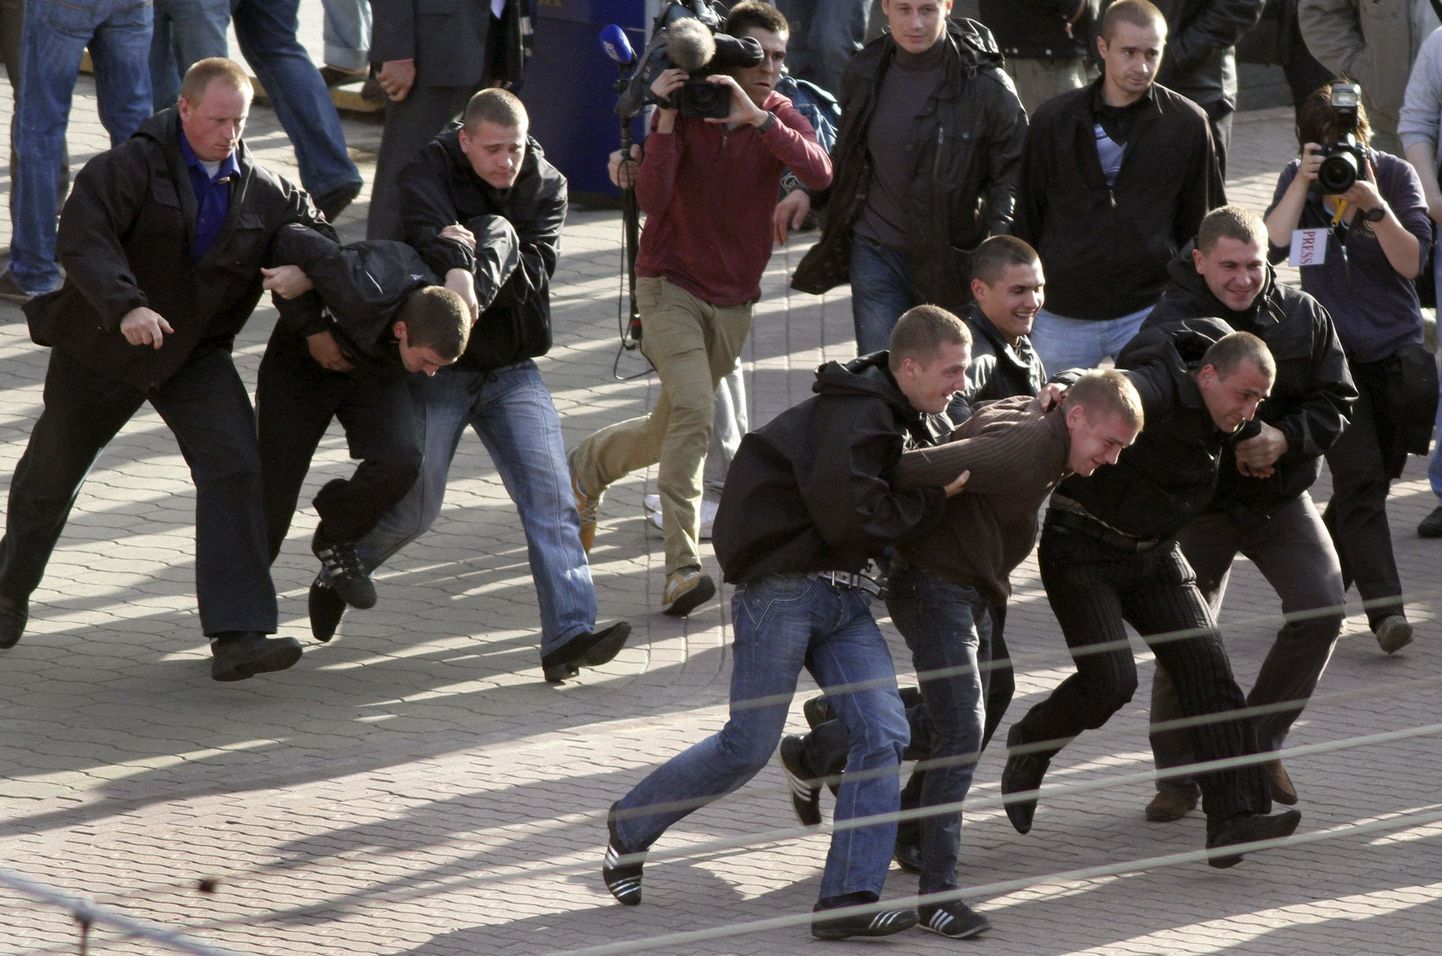 Задержание участников акции милиционерами в штатском в Минске.